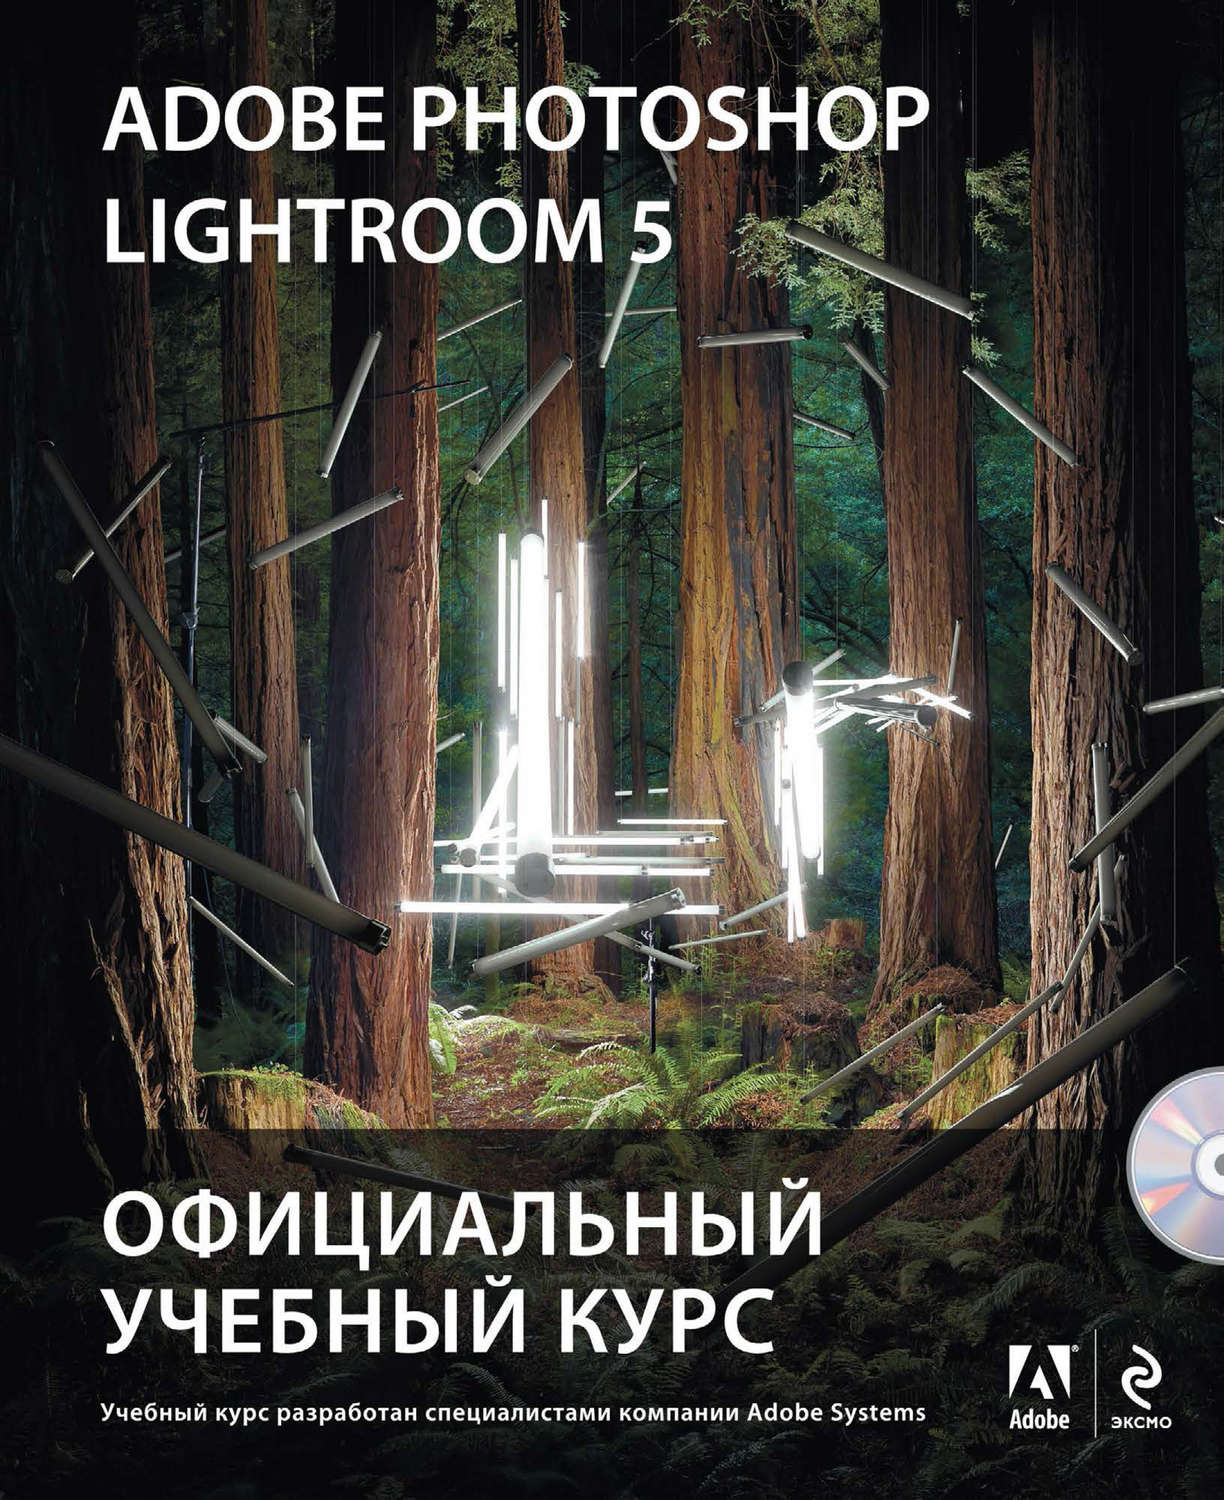 Adobe photoshop lightroom 5 книга скачать